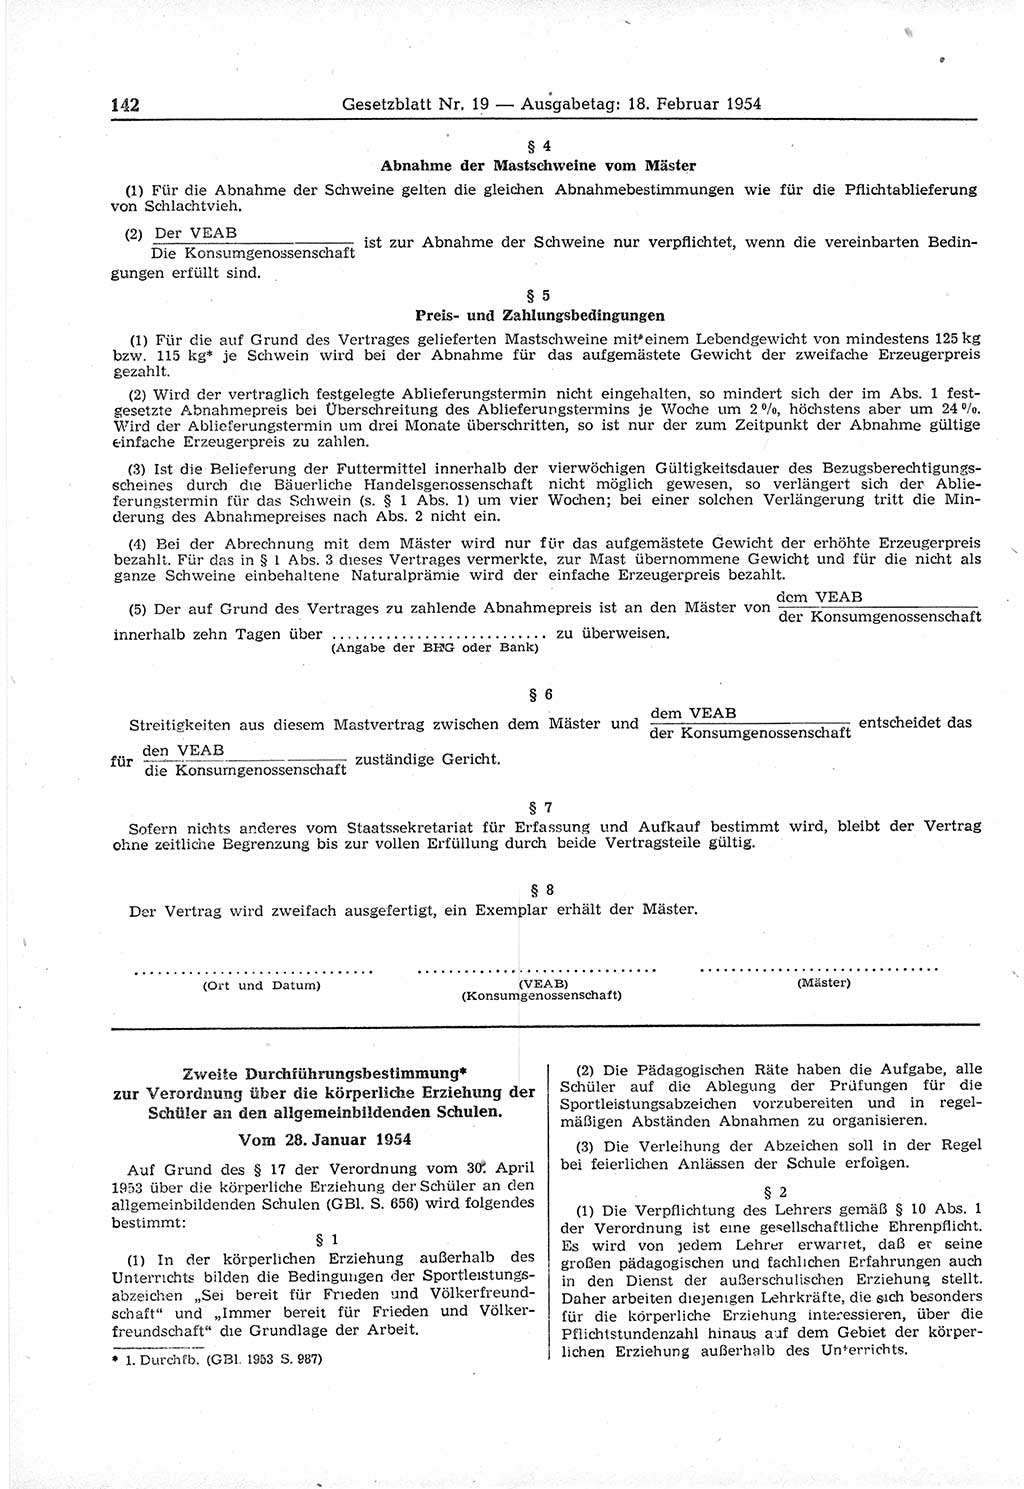 Gesetzblatt (GBl.) der Deutschen Demokratischen Republik (DDR) 1954, Seite 142 (GBl. DDR 1954, S. 142)